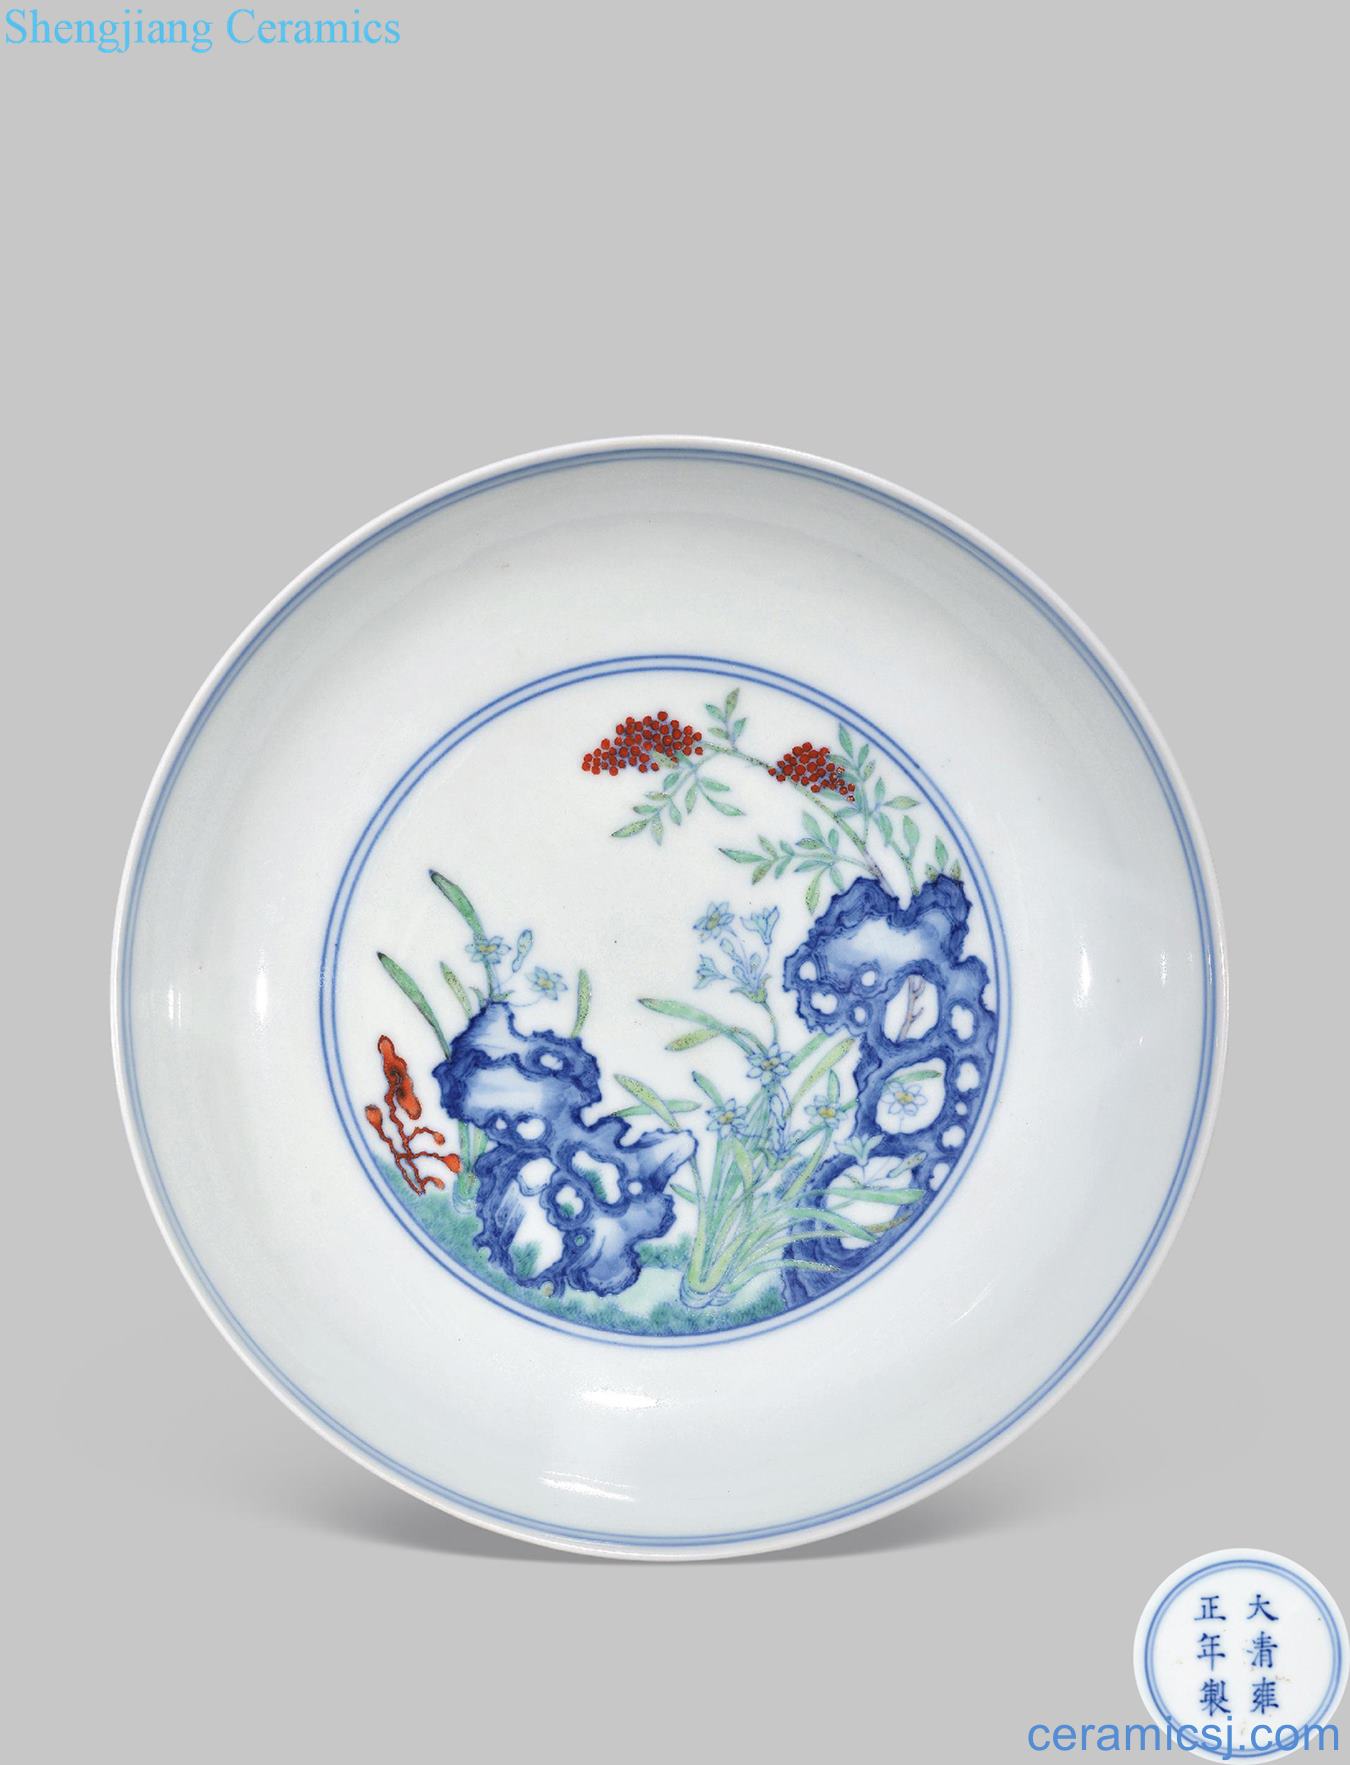 Qing yongzheng dou ling xian birthday plate